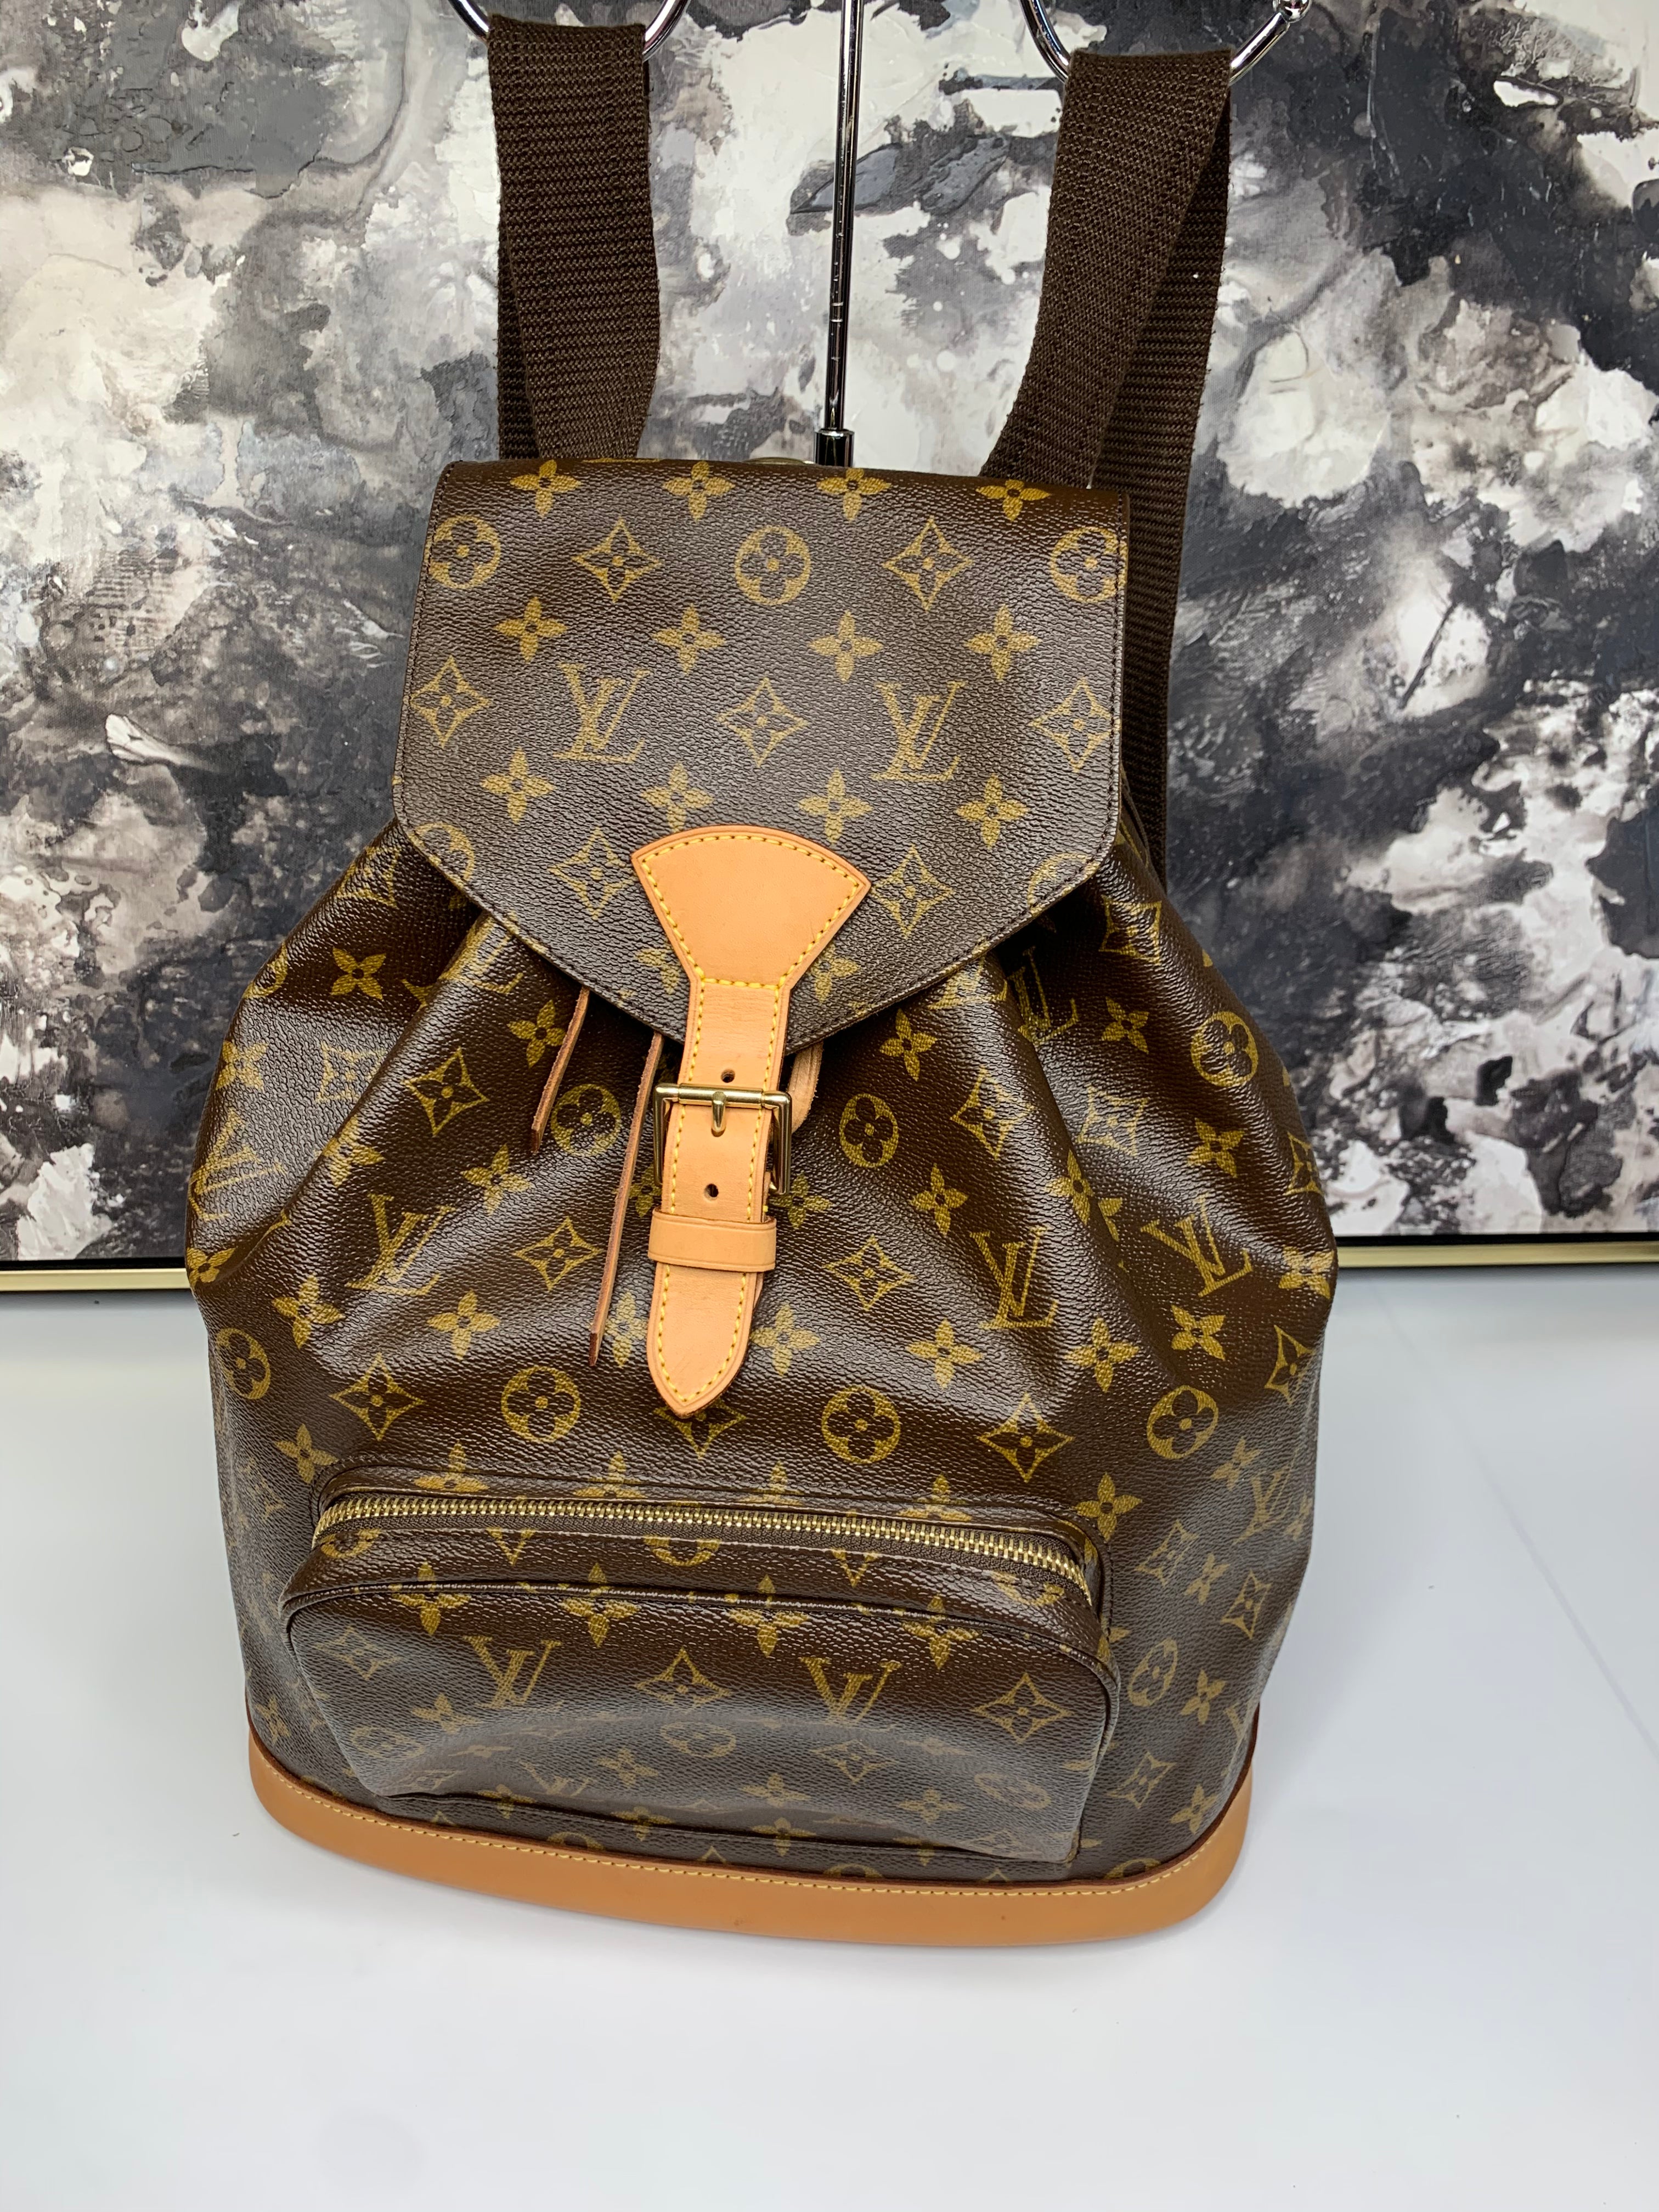 Louis Vuitton, Bags, Beautiful Authentic Louis Vuitton Montsouris Gm